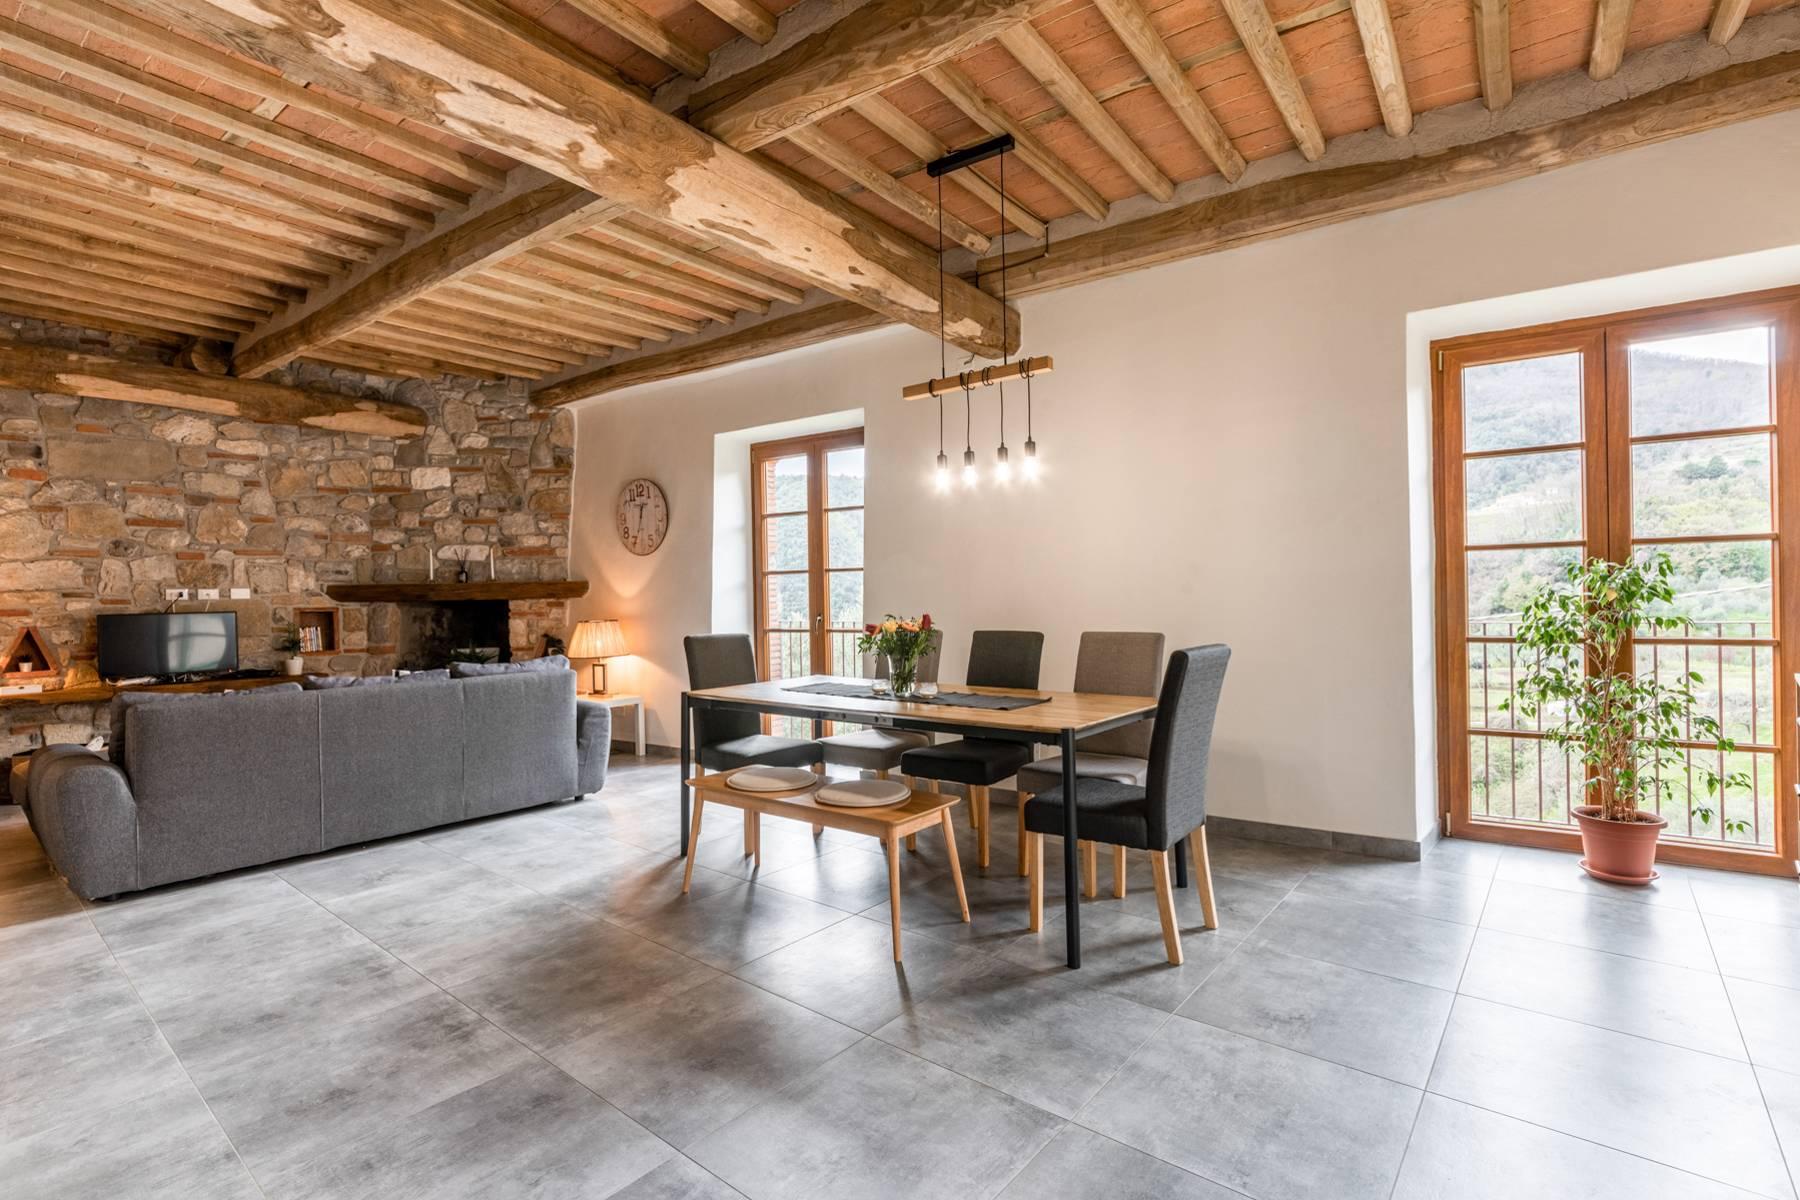 Maison jumelée restaurée avec amour sur les collines de Lucca - 5